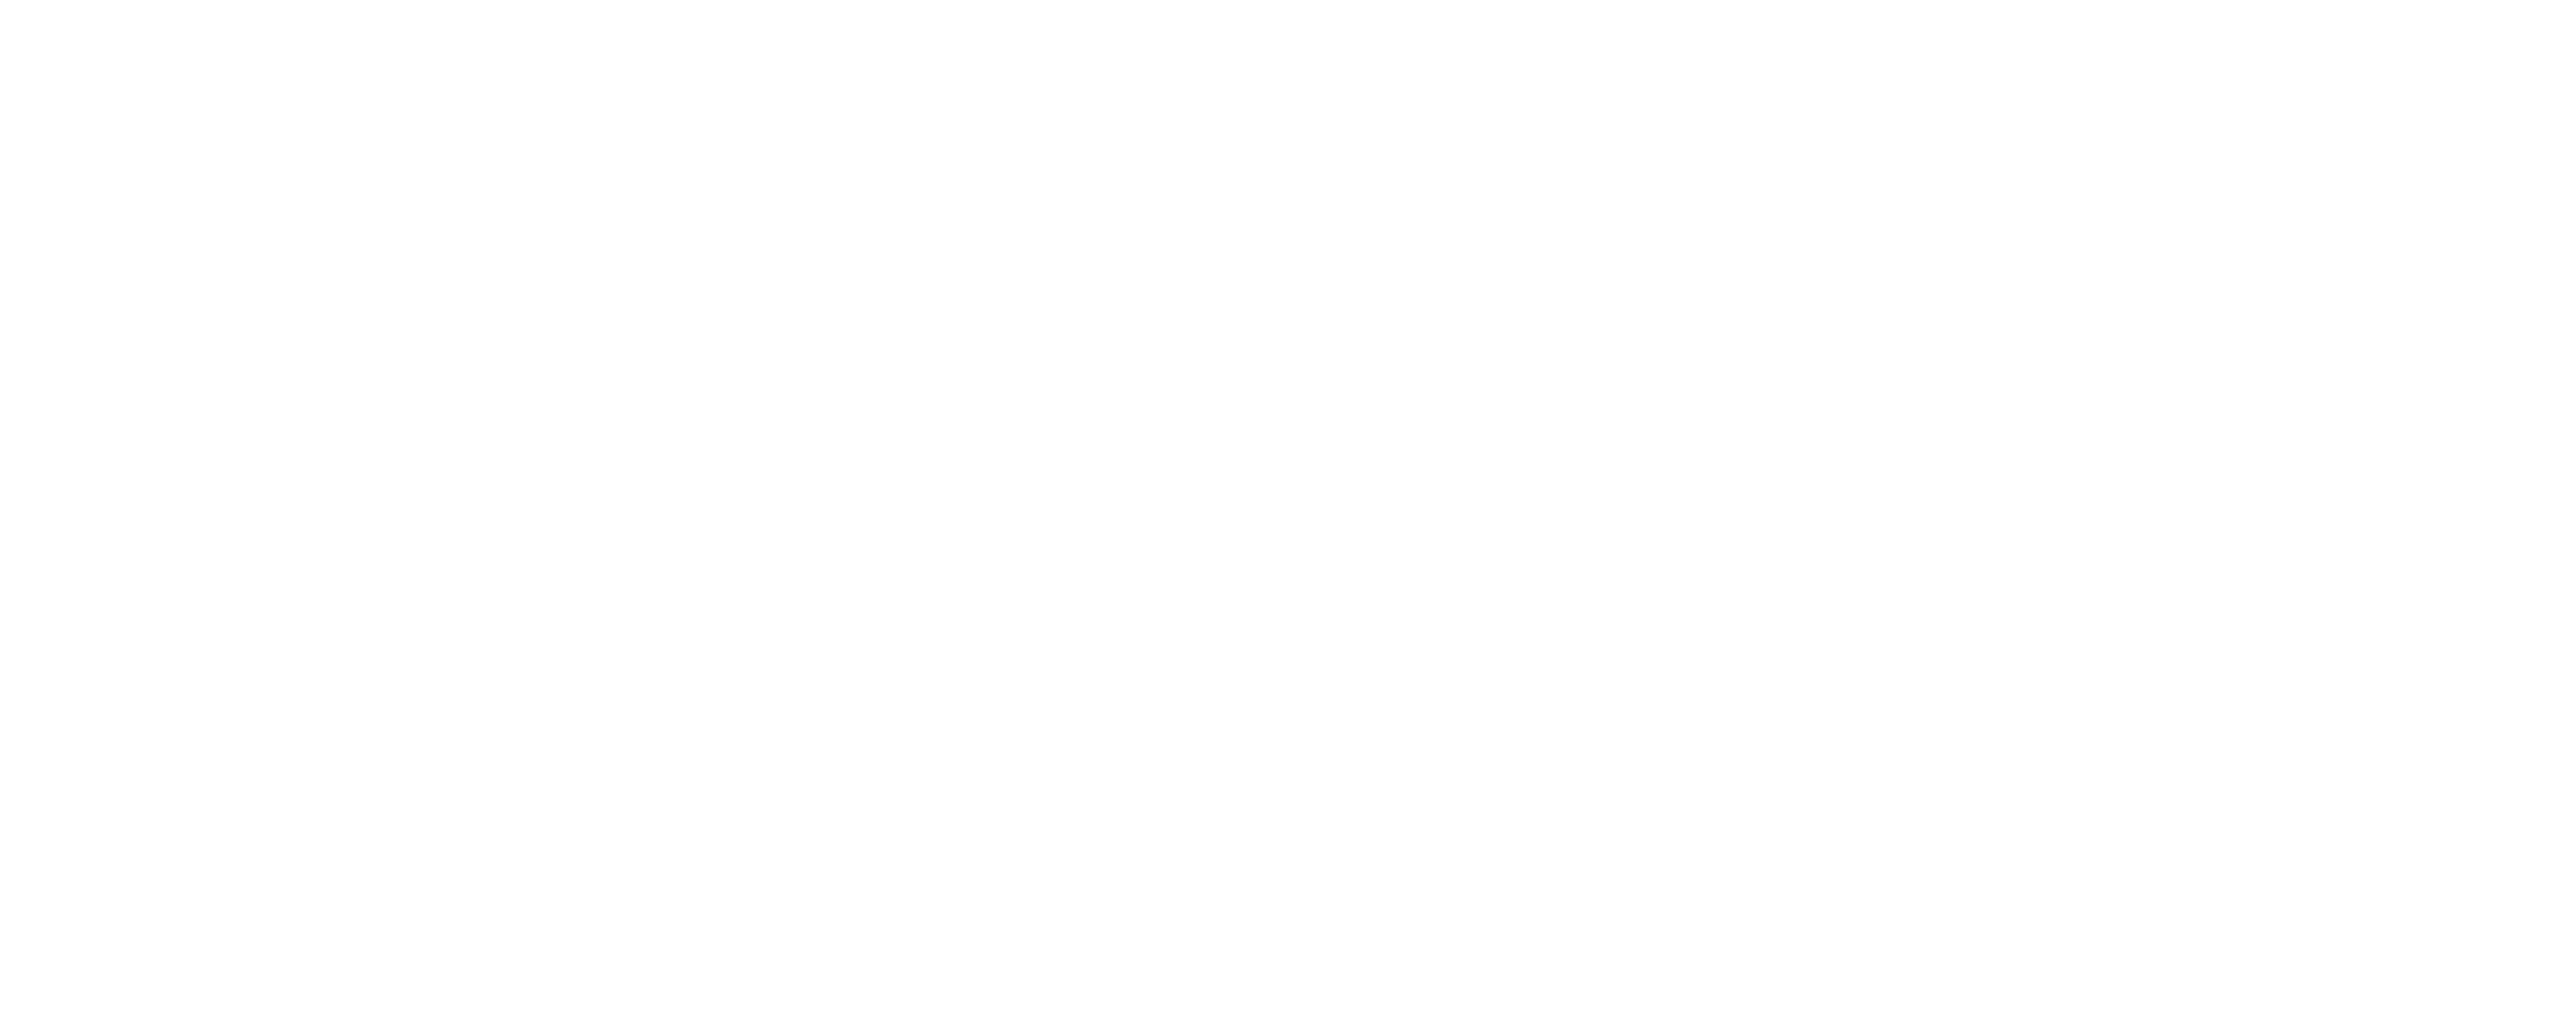 Chris Schirmer